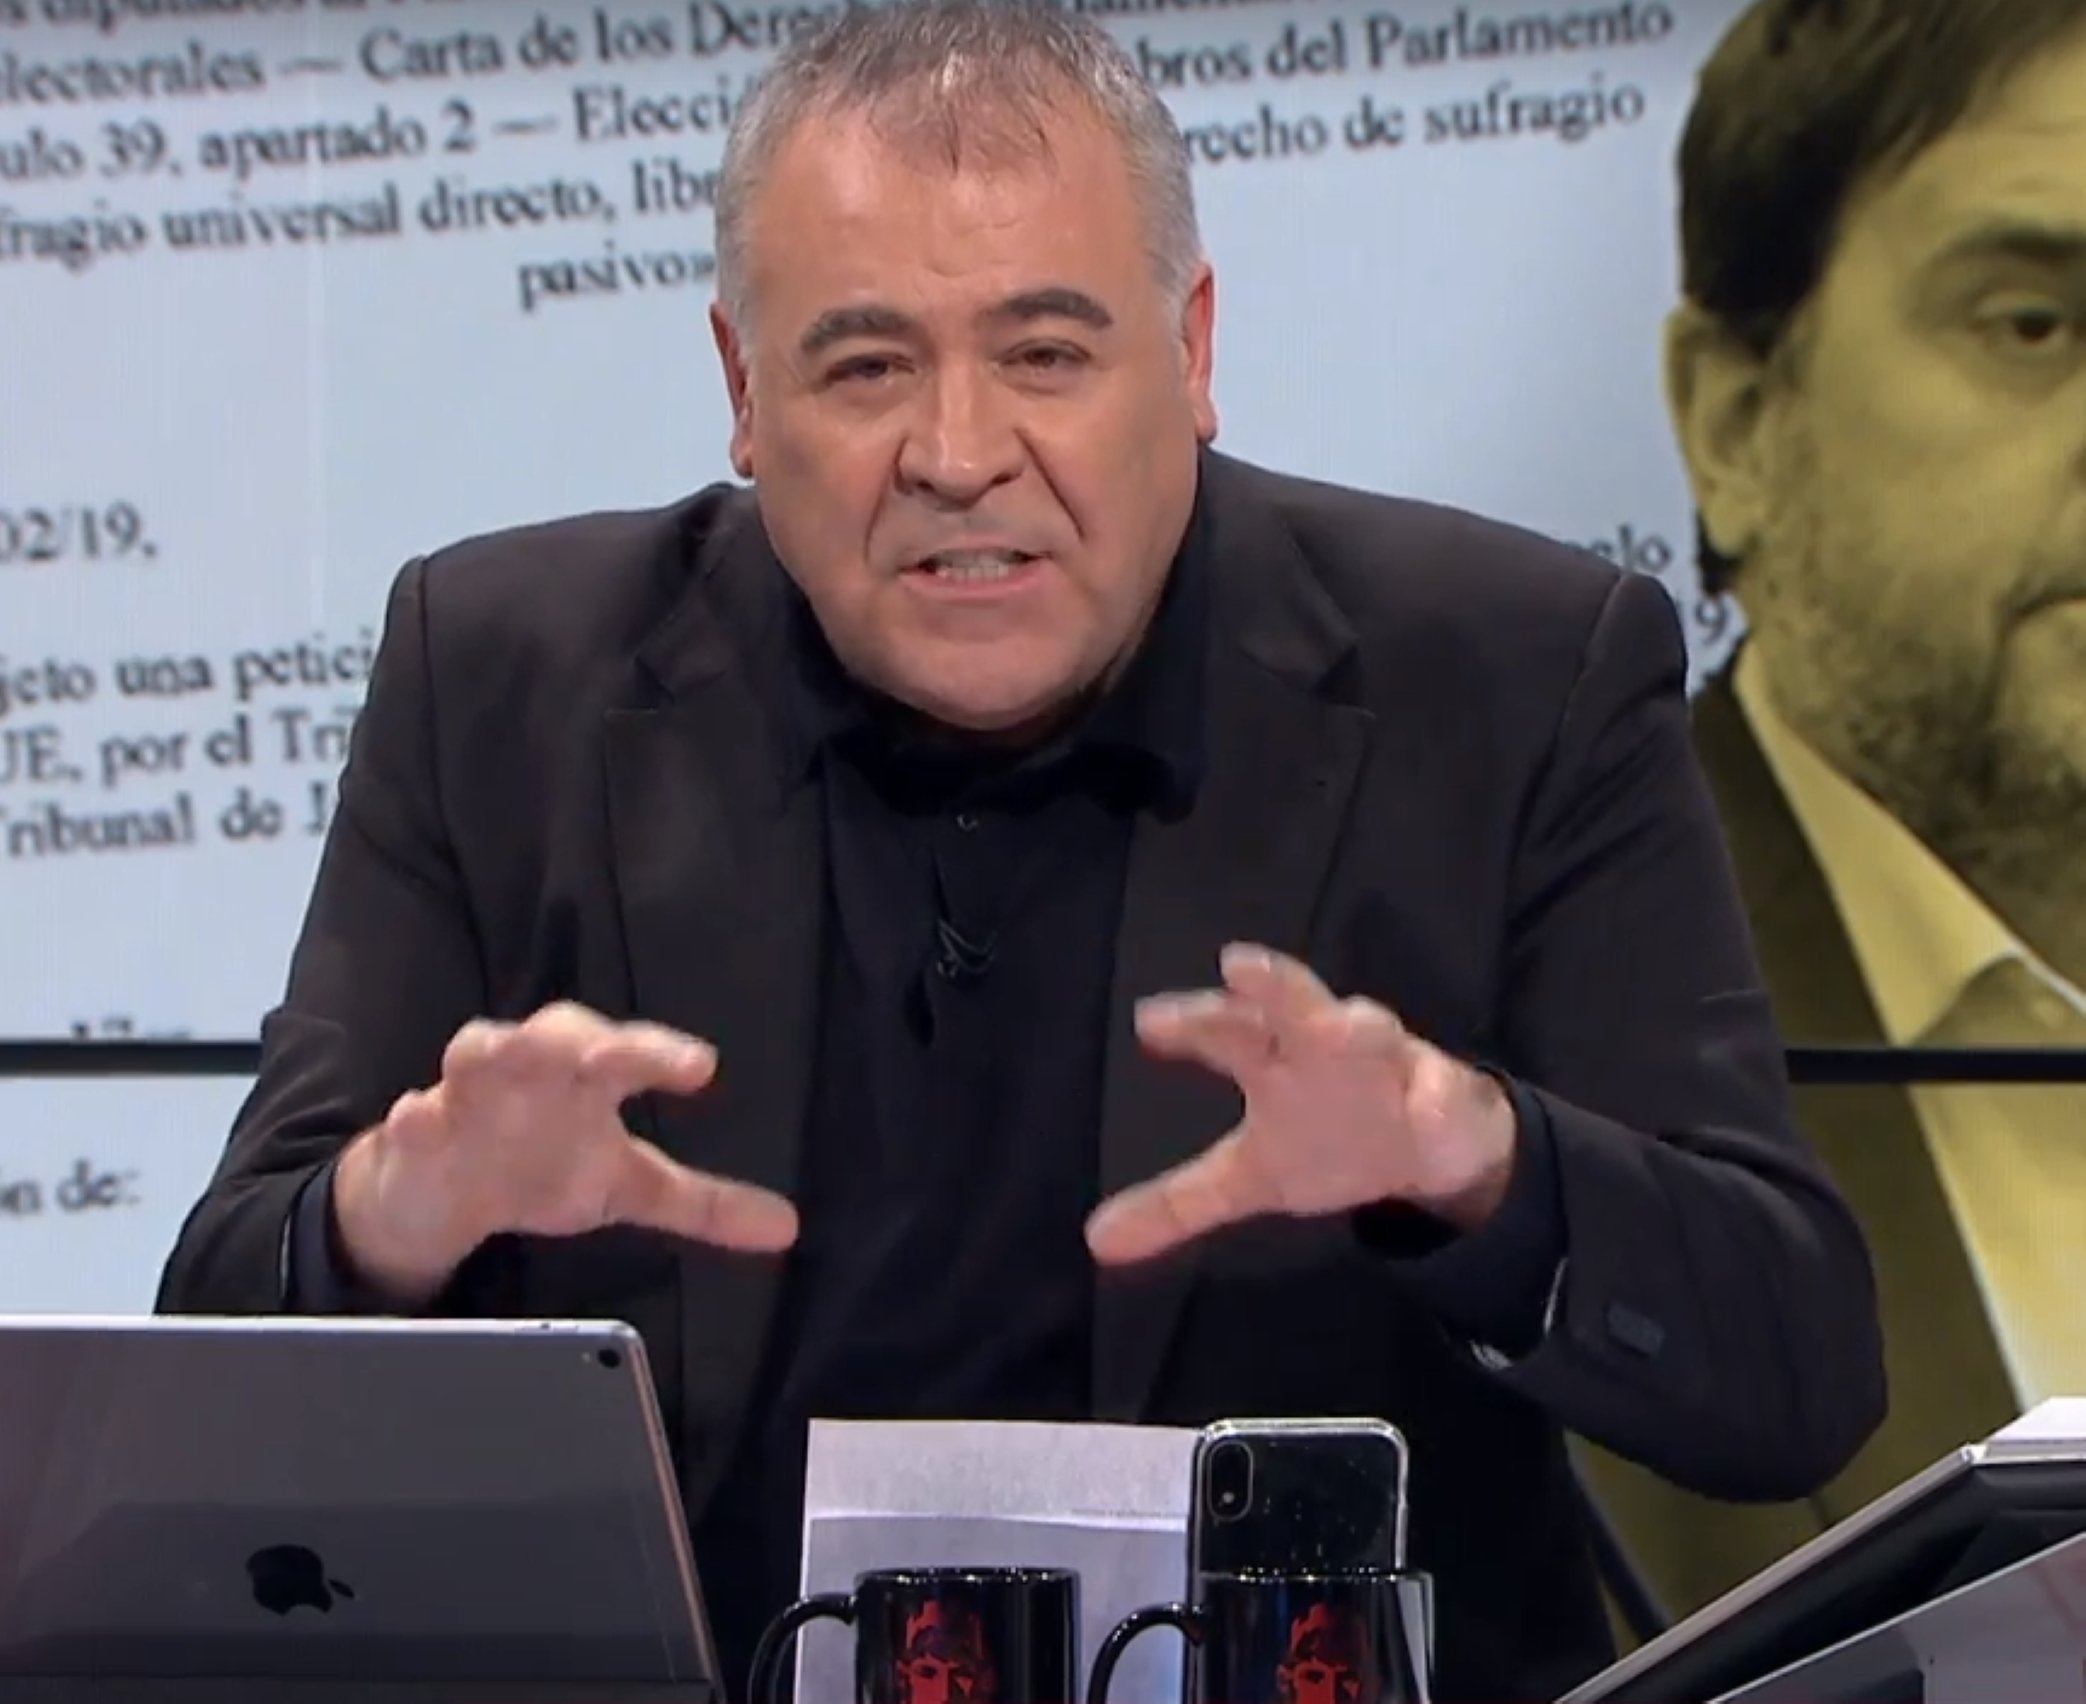 El zasca de Boye a Ferreras en directo: "¿Puigdemont, a Perpinyà?"